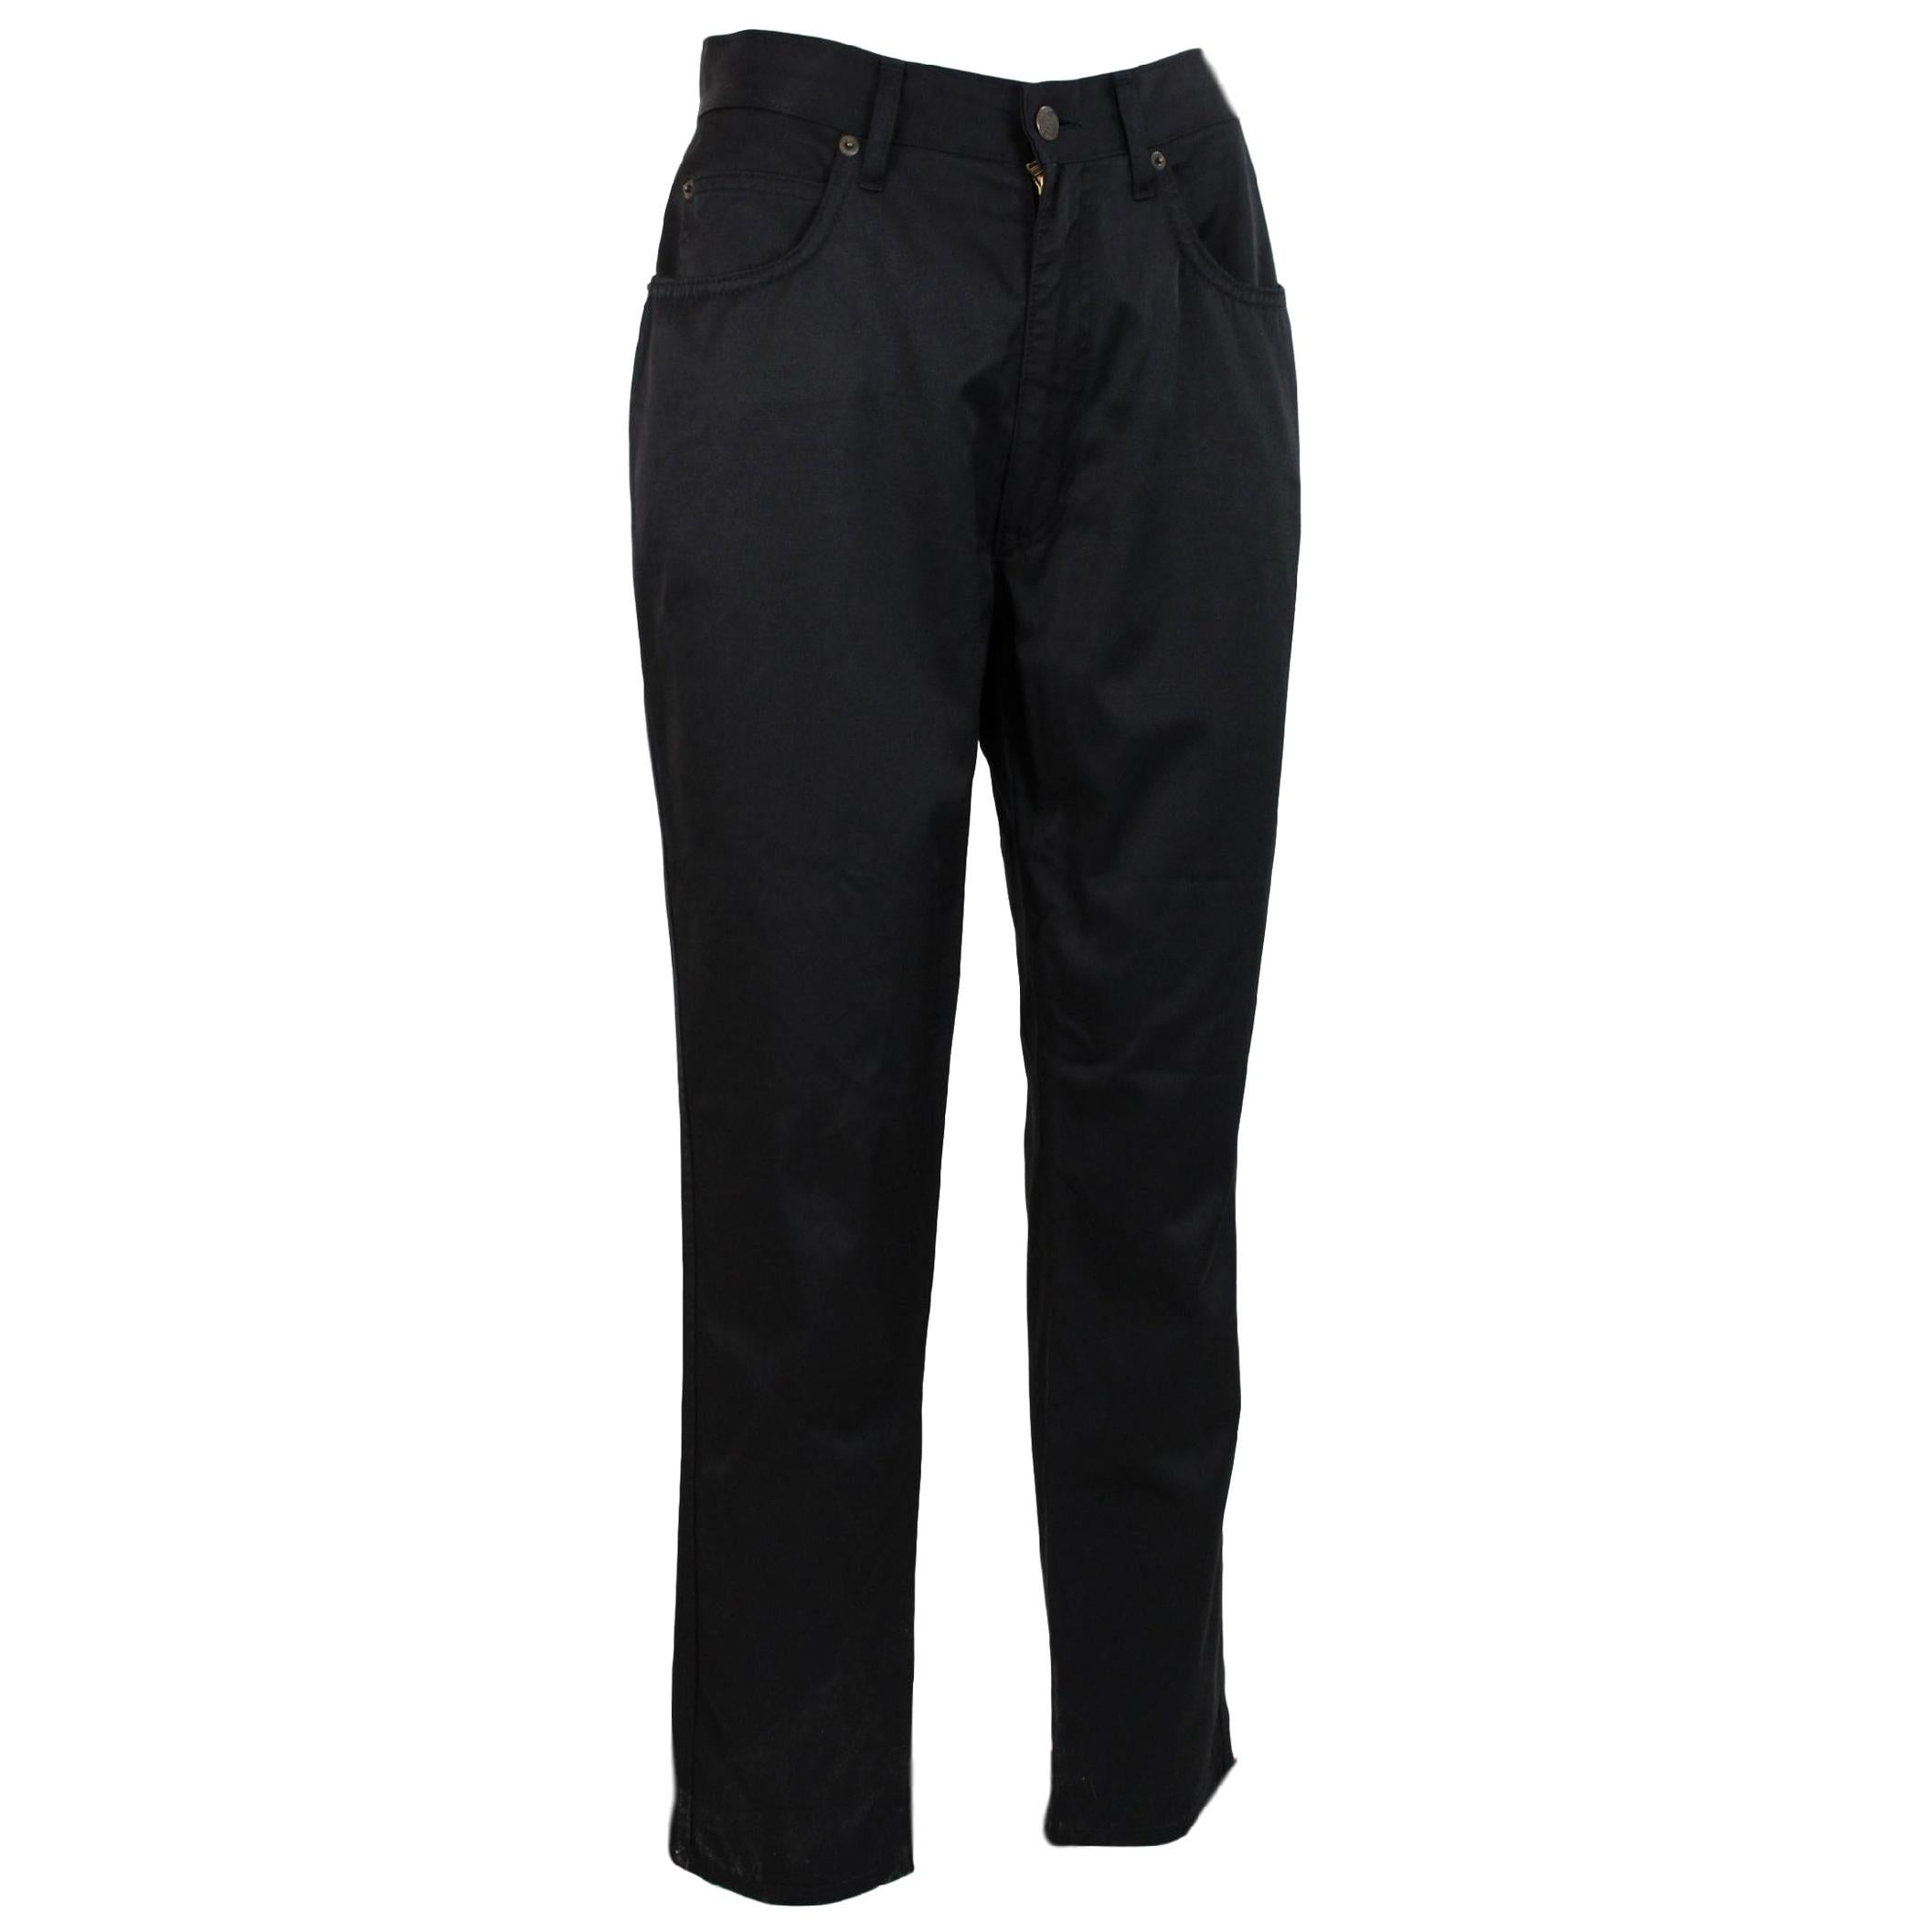 1980s Fendi Black Cotton Jeans Classic Capri Pants